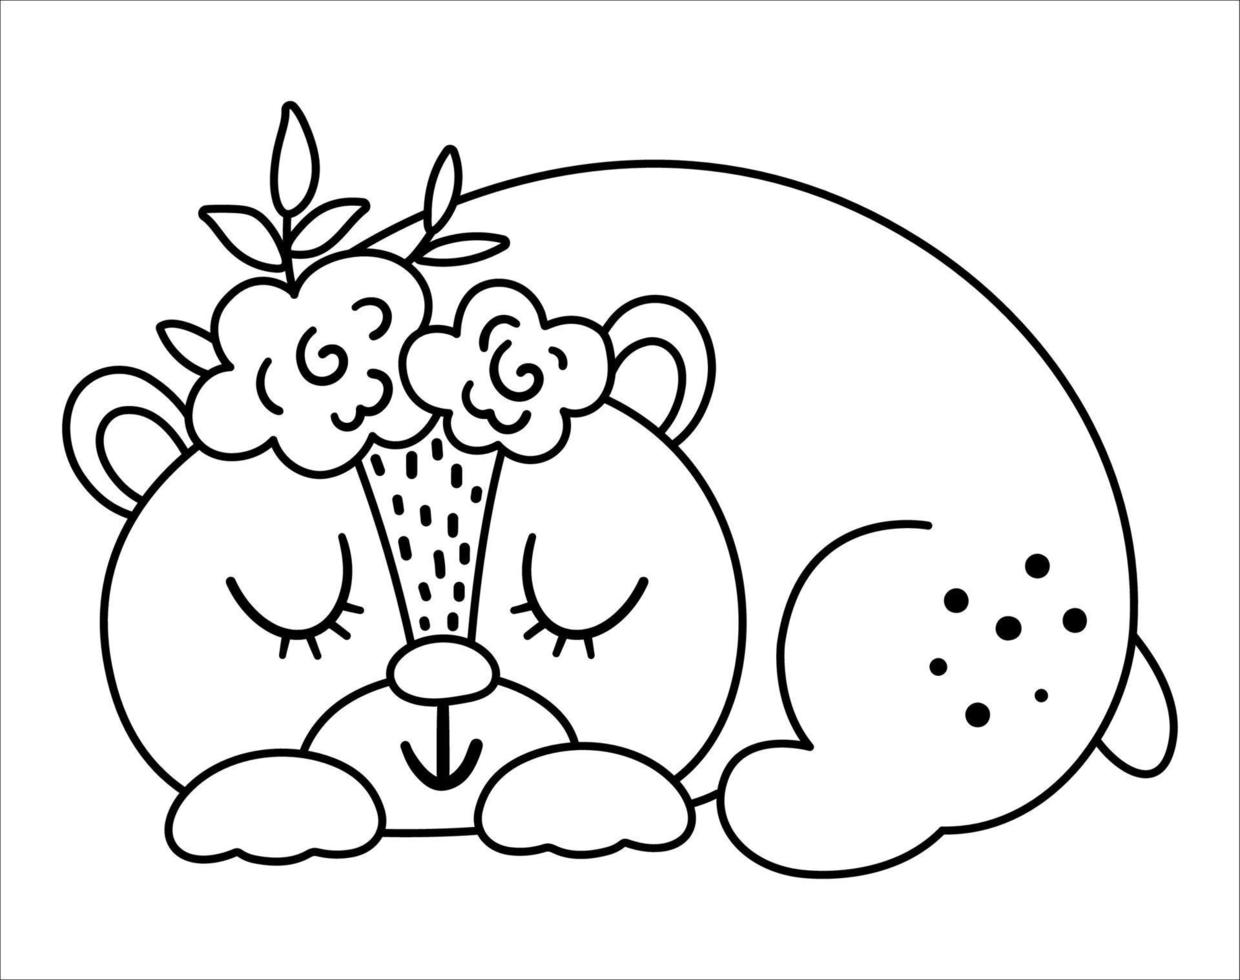 vektor svart och vit sovande björn med blommor på huvudet. söt bohemisk stil skogsmark djur linje ikon isolerad på vit bakgrund. söt boho skog illustration för kort eller tryck design.